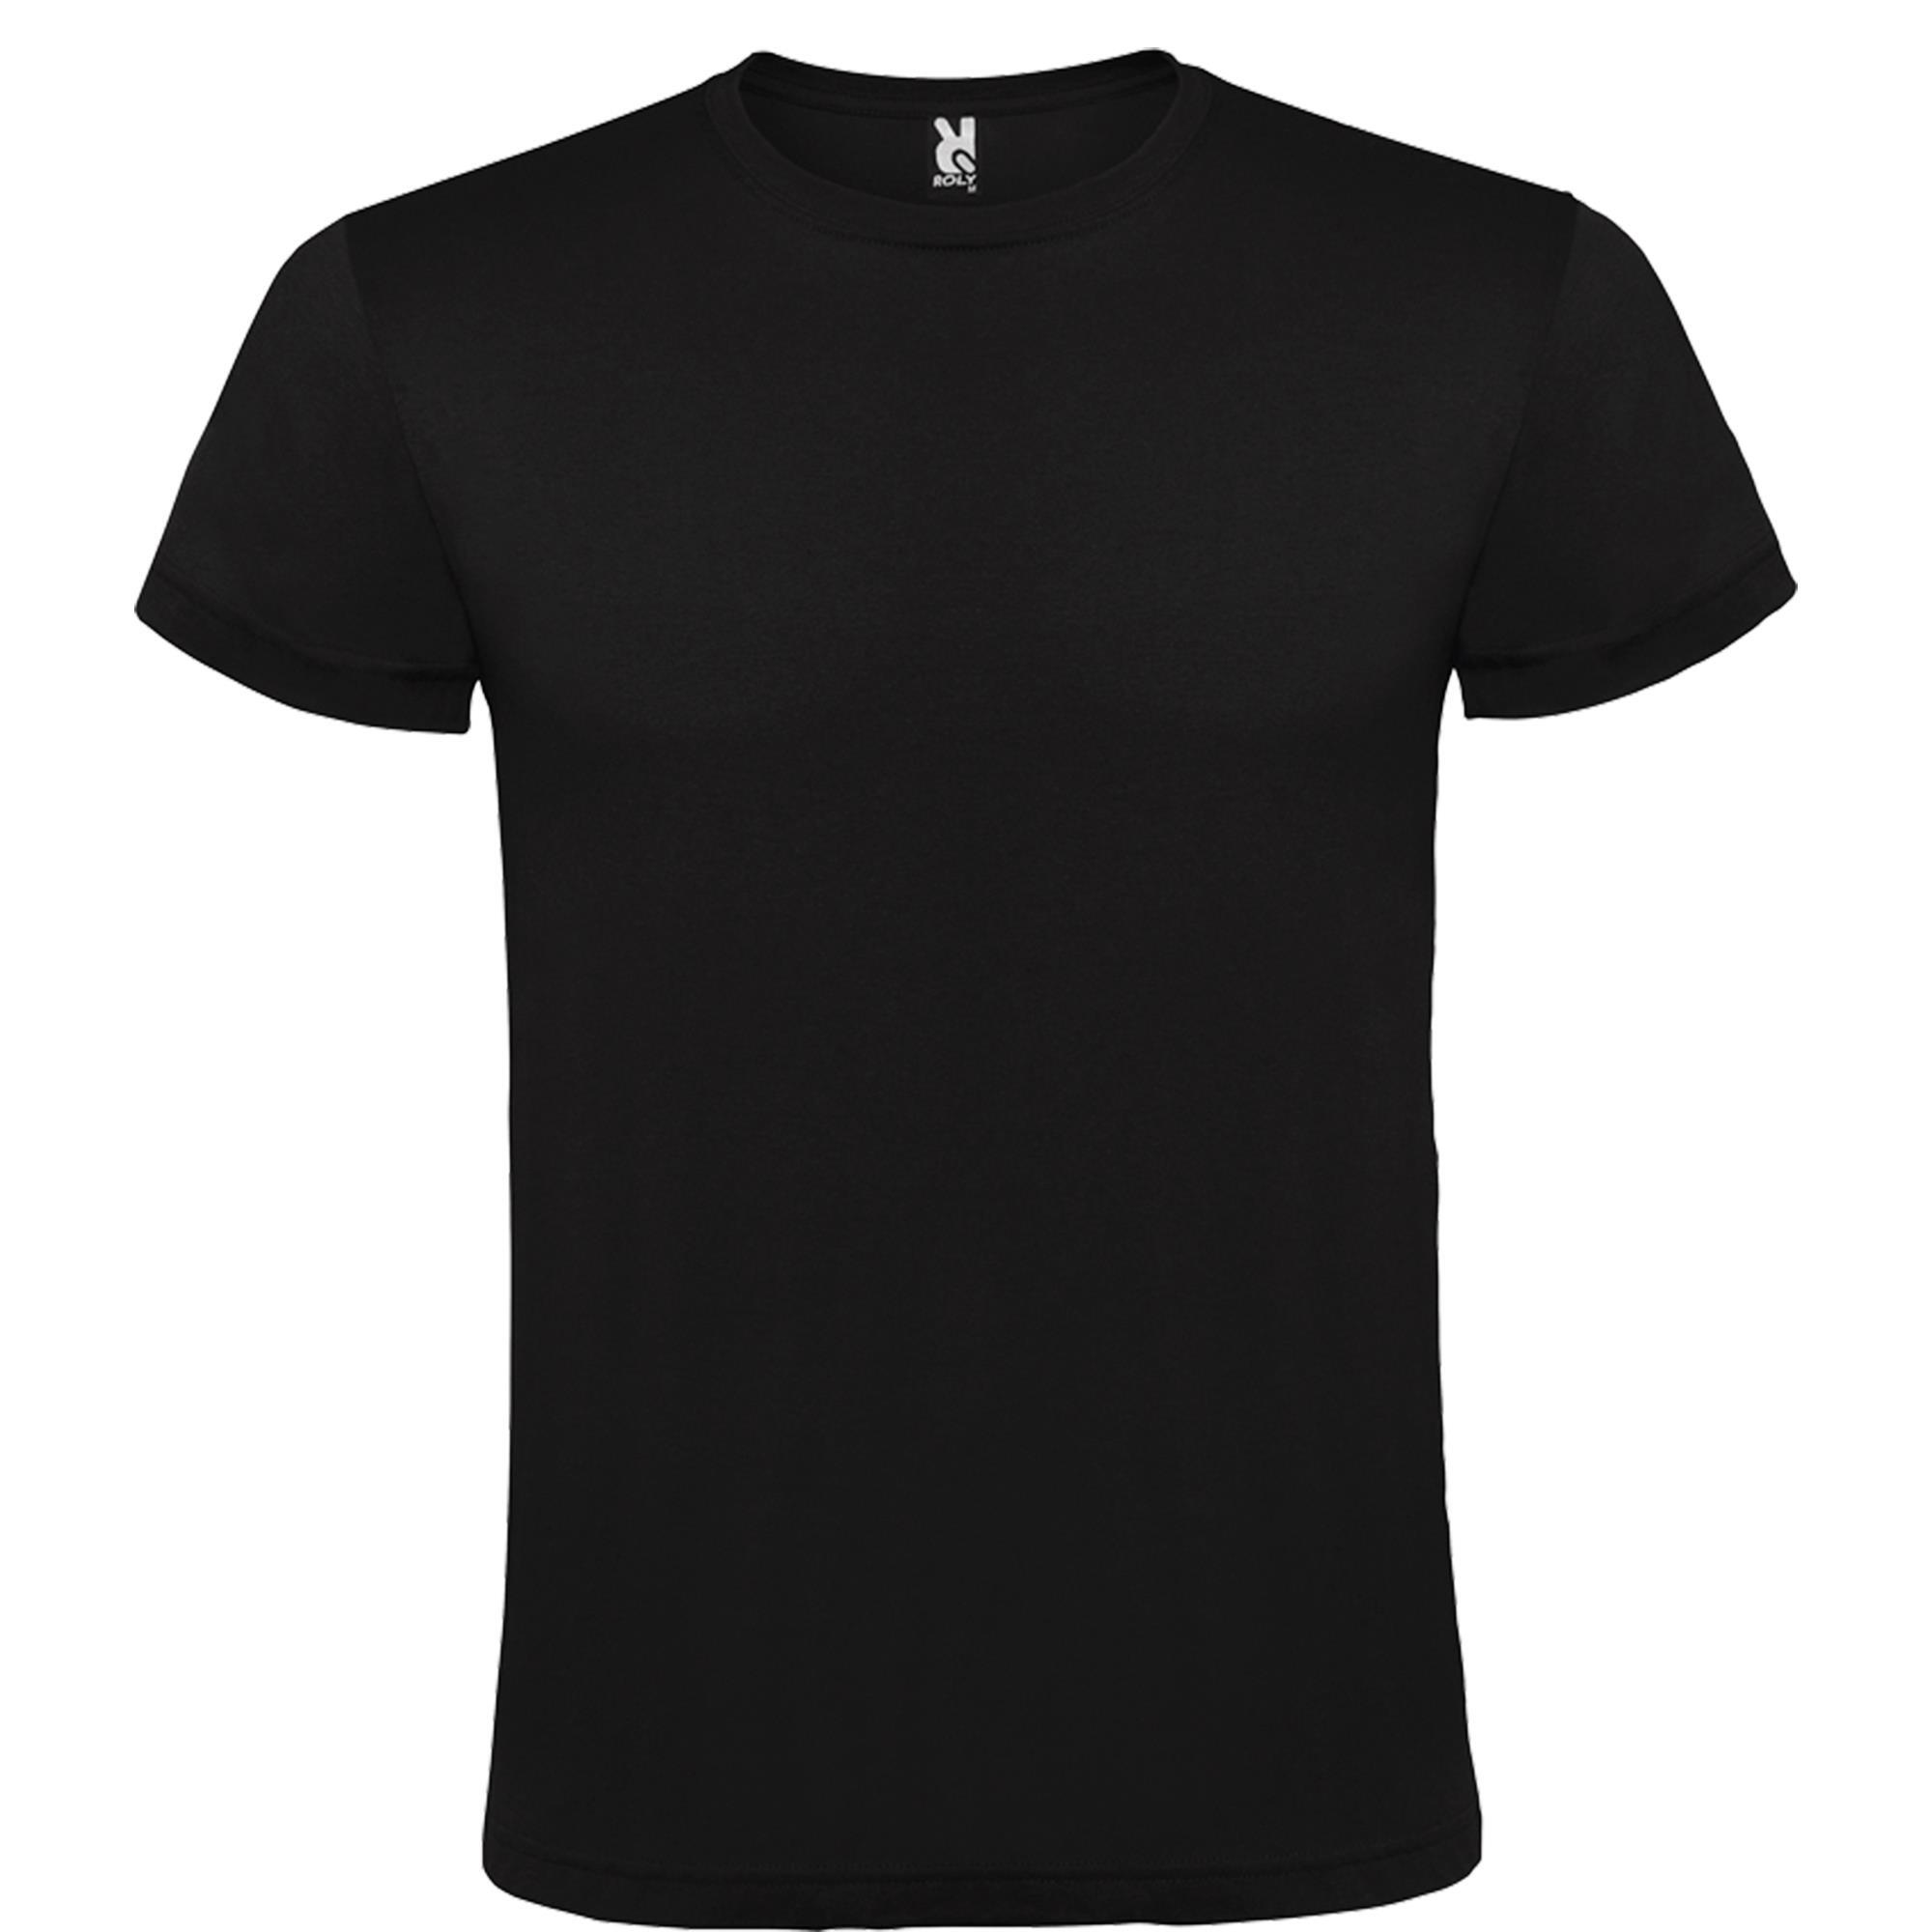 Rondgebreide T-shirt unisex voor volwassen zwart personalisatie mogelijk